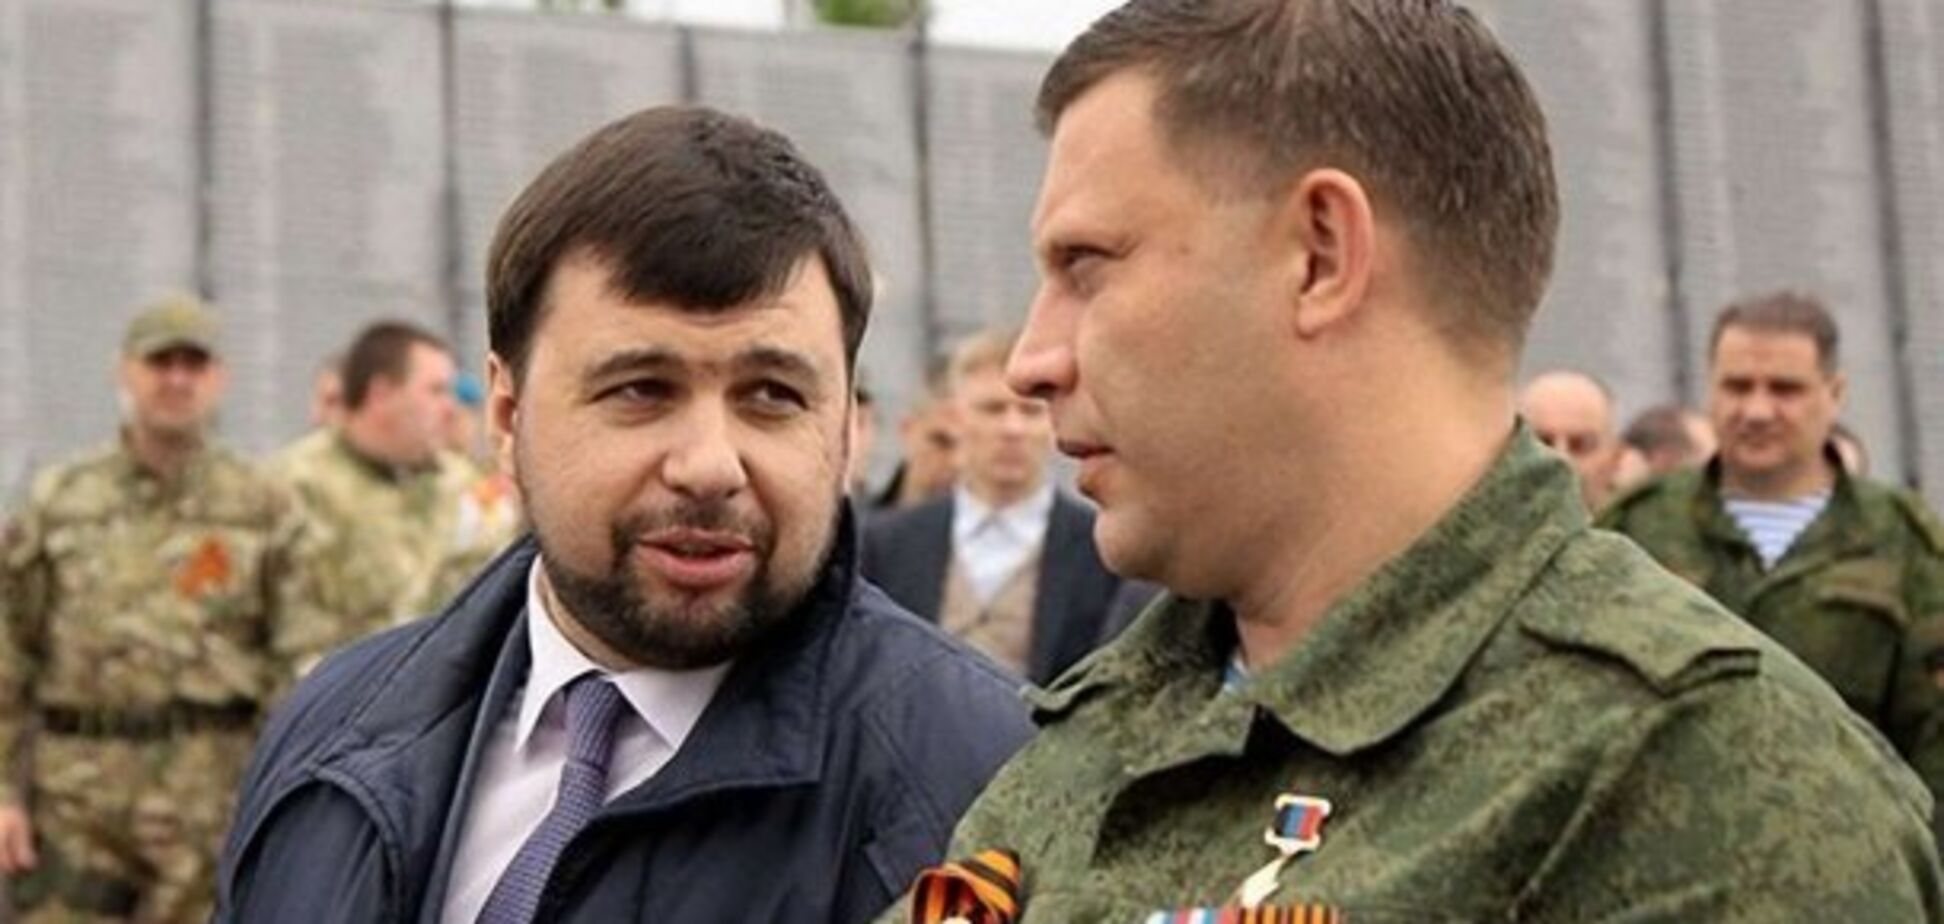 Пушилин боится и 'косит бабло': блогер раскрыл план главаря 'ДНР'